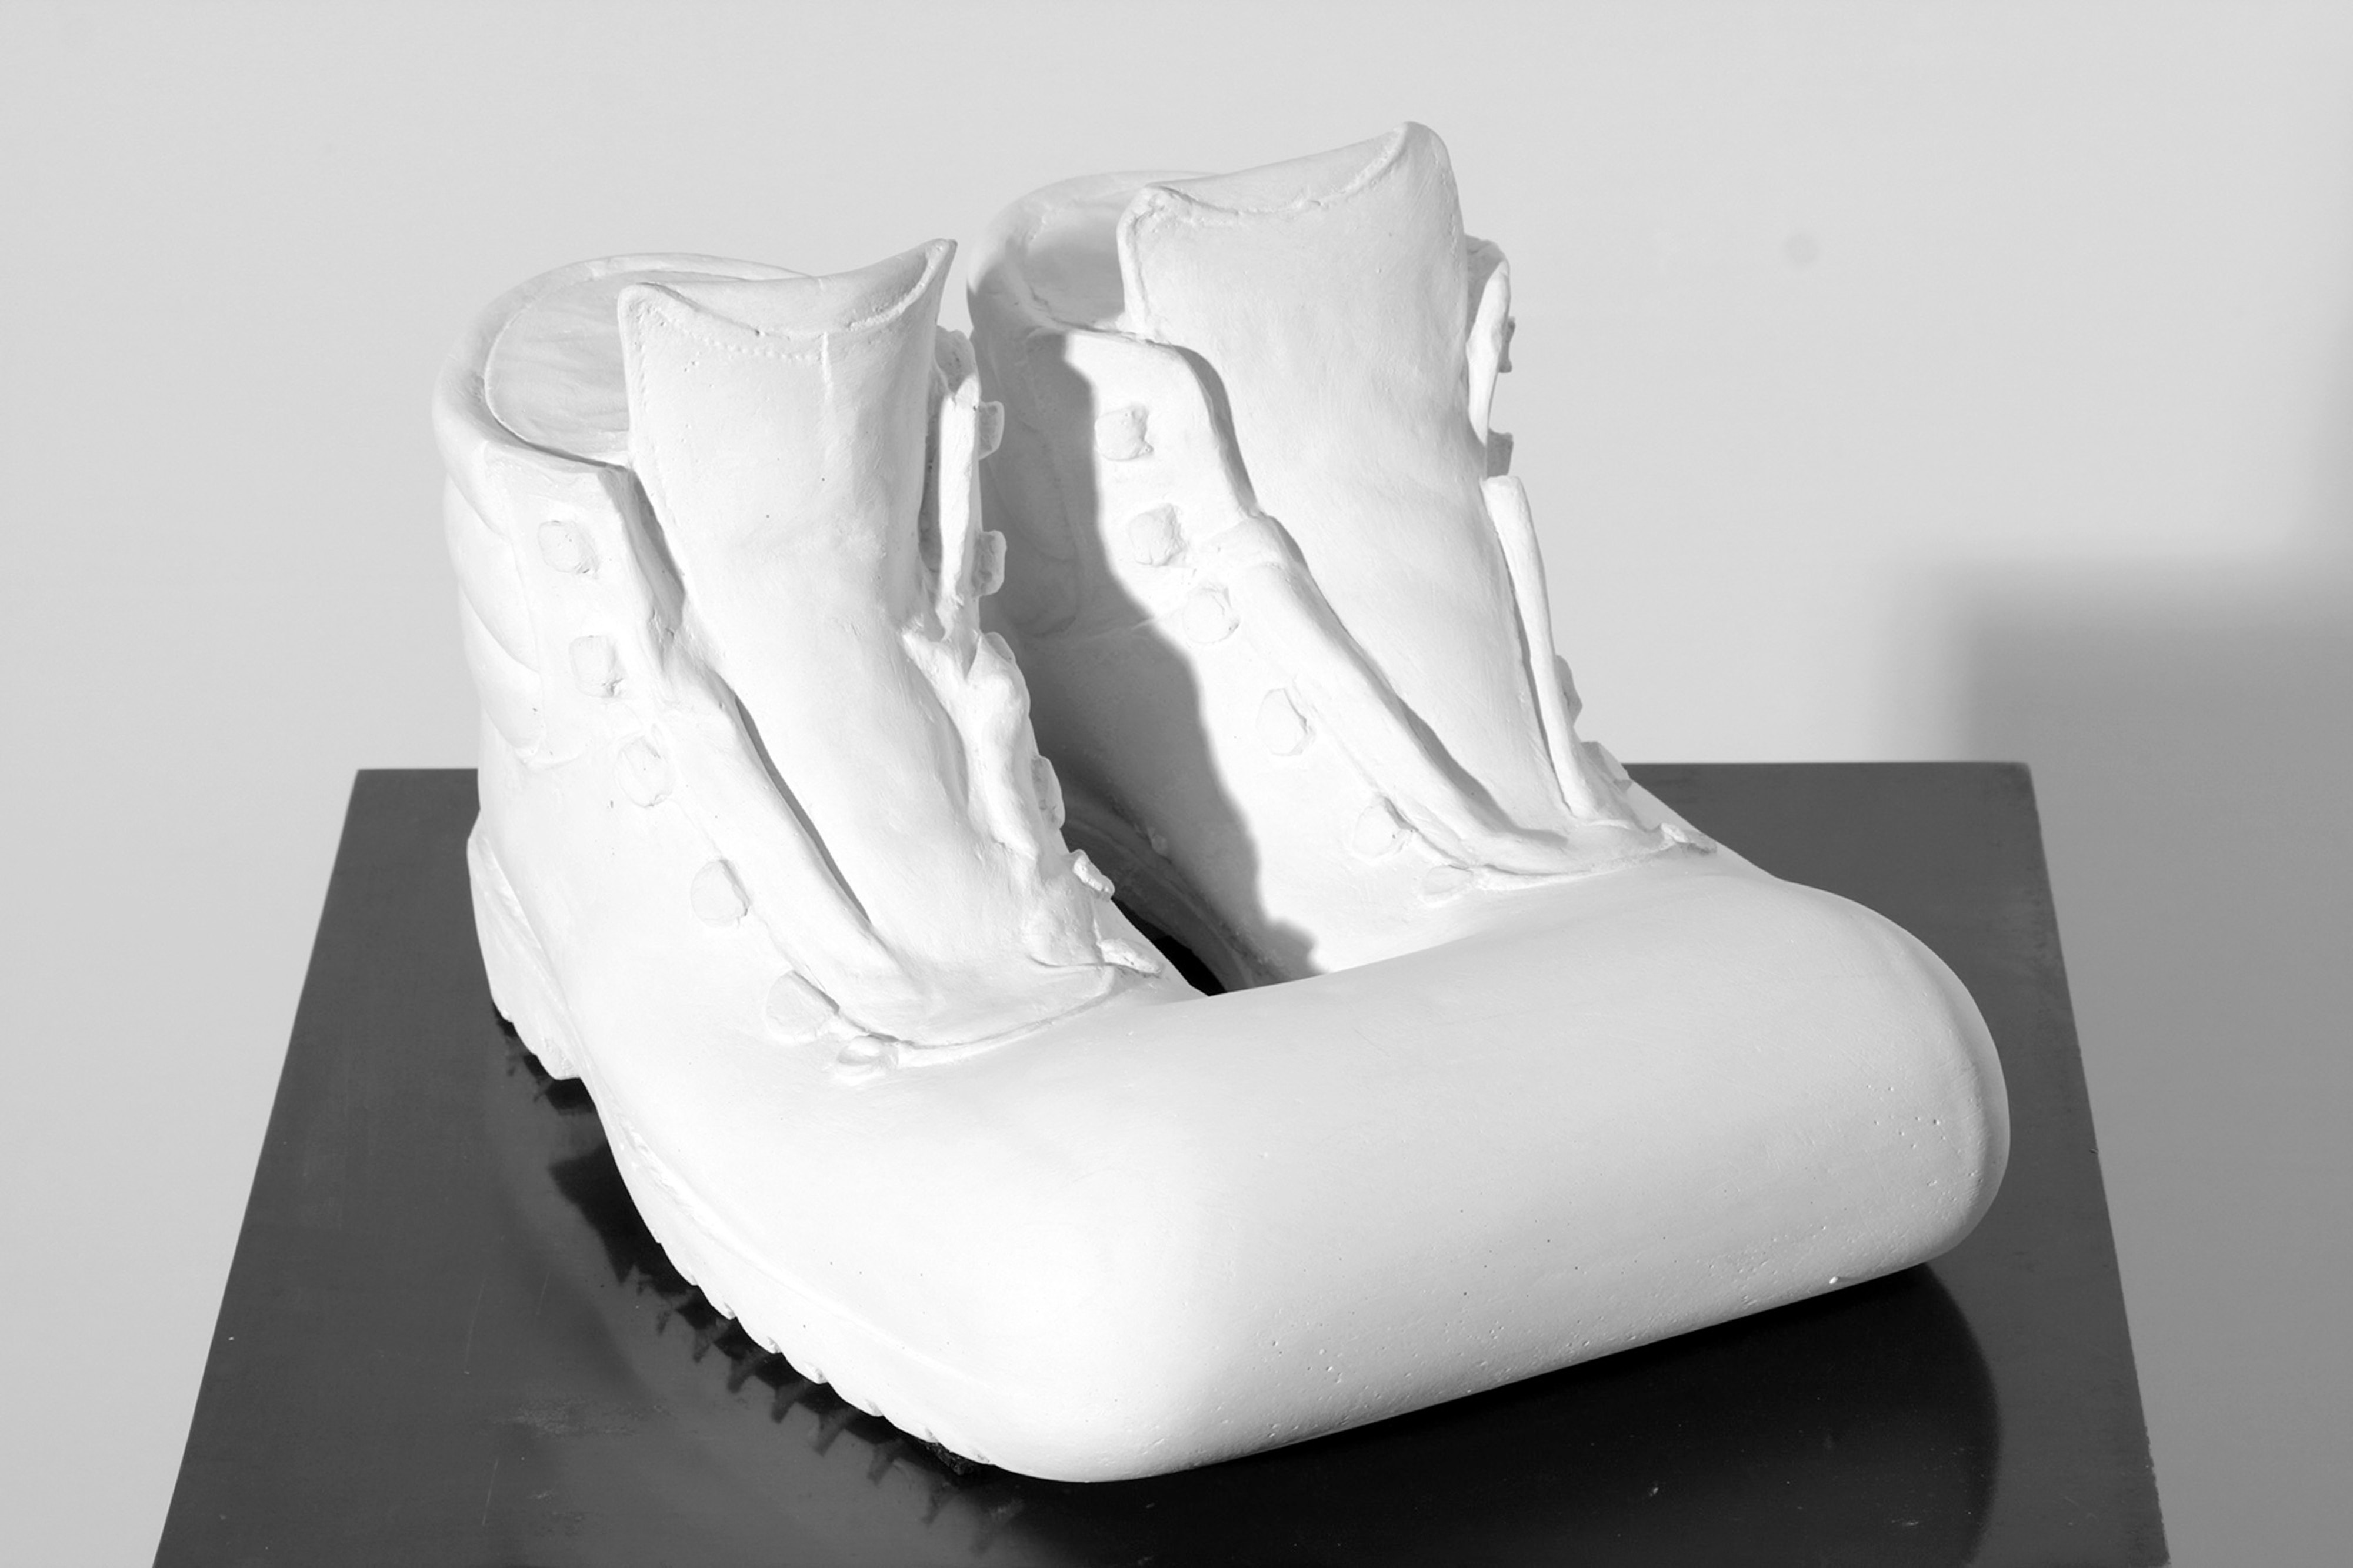 About Sculpture, Rolando Anselmi